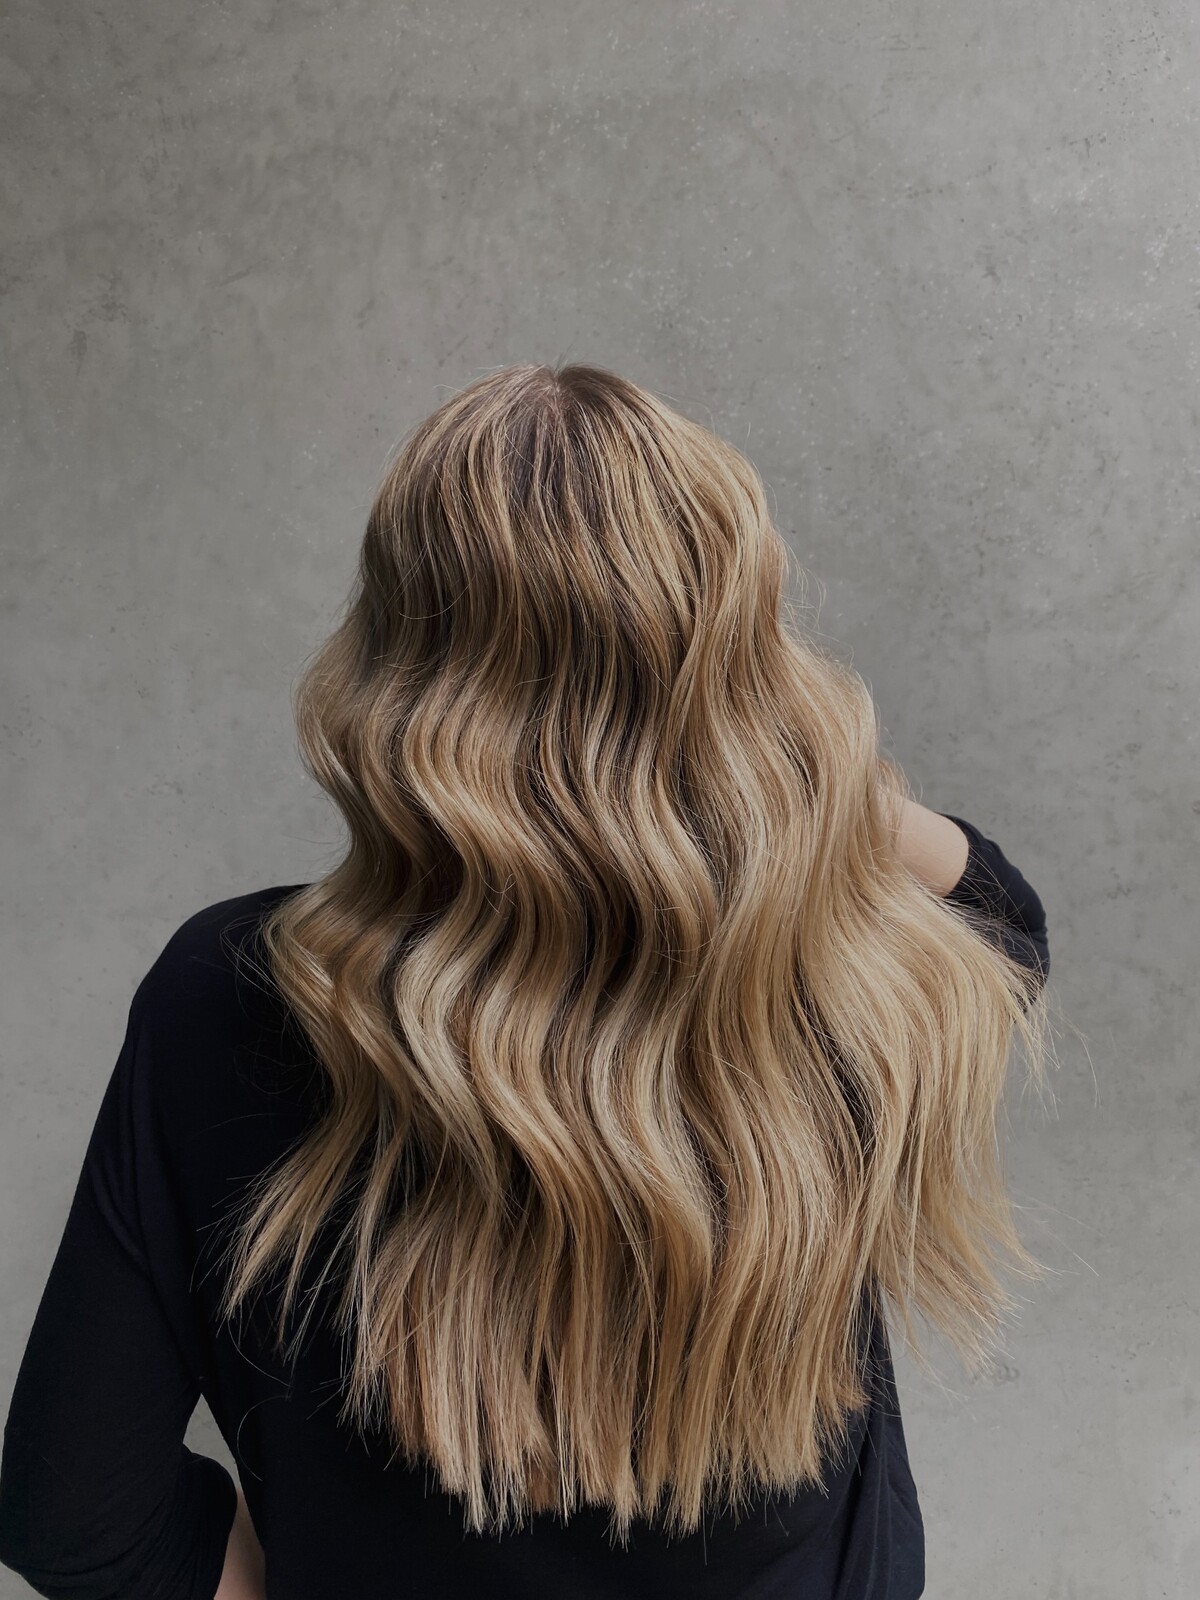 Balayage je nadčasový trend, ktorý hádam nikdy nevyjde z módy. Pre blond vlasy tento rok trendujú najmä zlaté odtiene, popredná hairstylistka Monika Kalická však dáva výkričník pri ich údržbe.